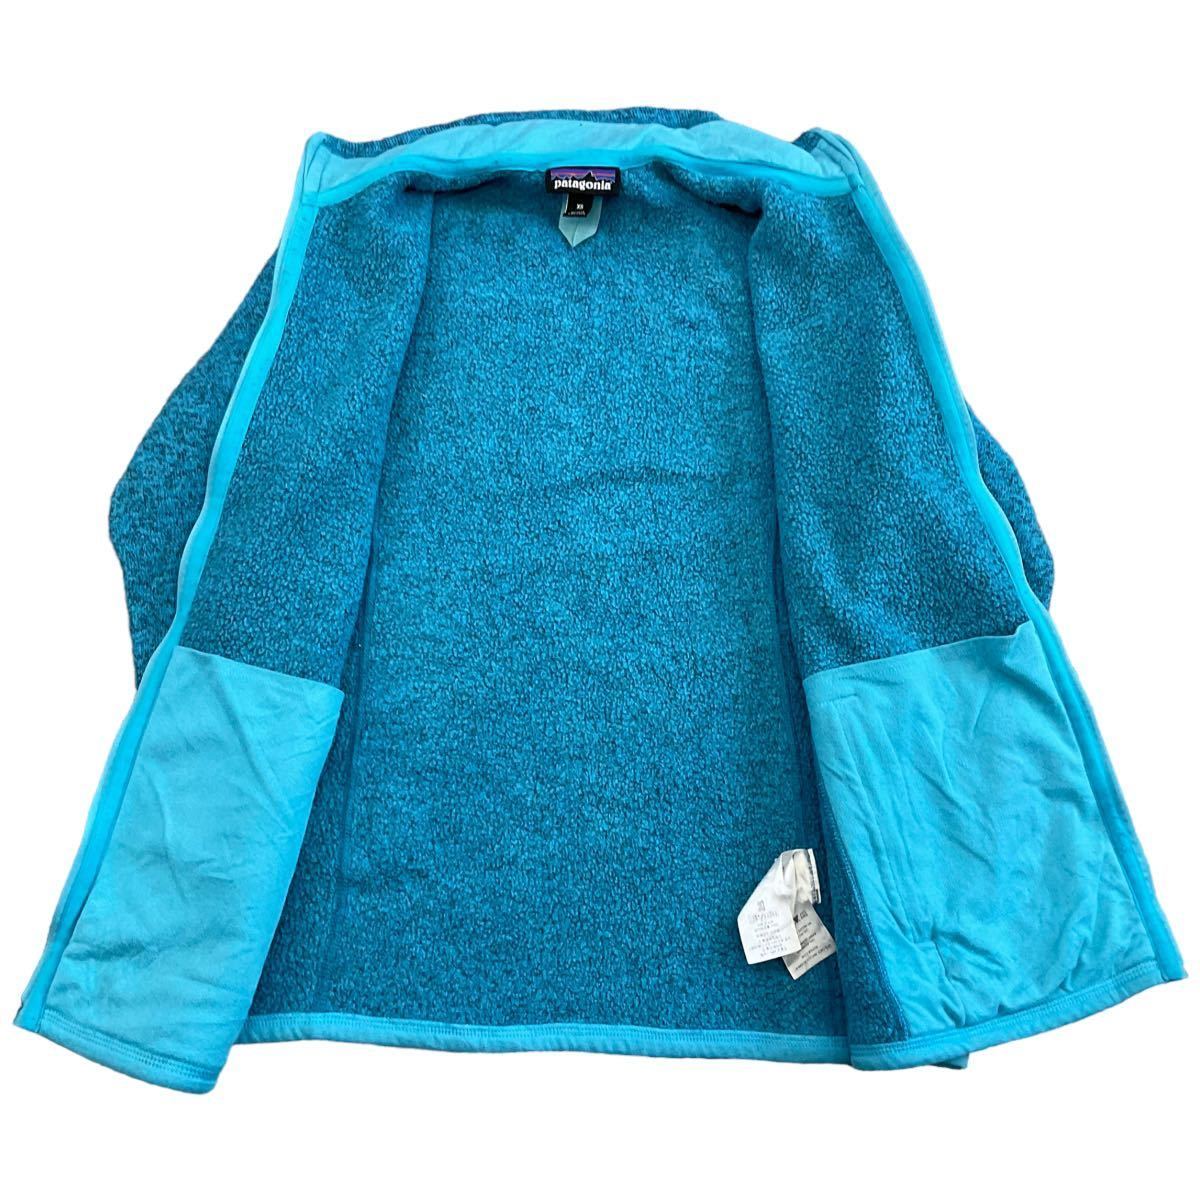 Patagonia ベターセーター XS ターコイズブルー フルジップ ジャケット アウトドア フリース パタゴニア Better Sweater 2015年製 25542_画像3